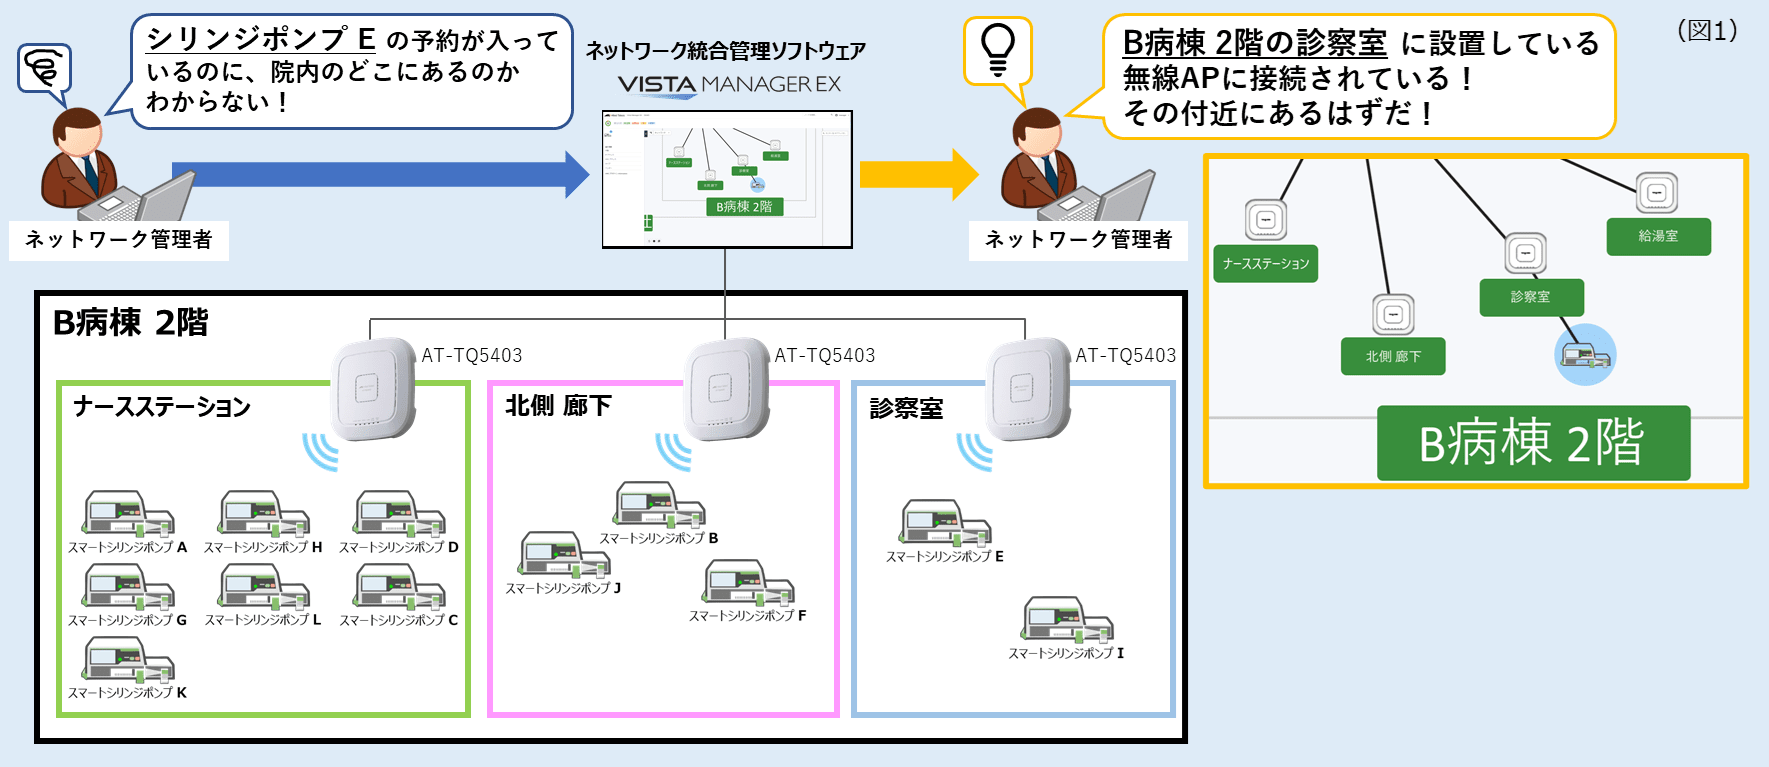 ネットワーク統合管理ソフトウェア上におけるスマートポンプの位置情報測位イメージ